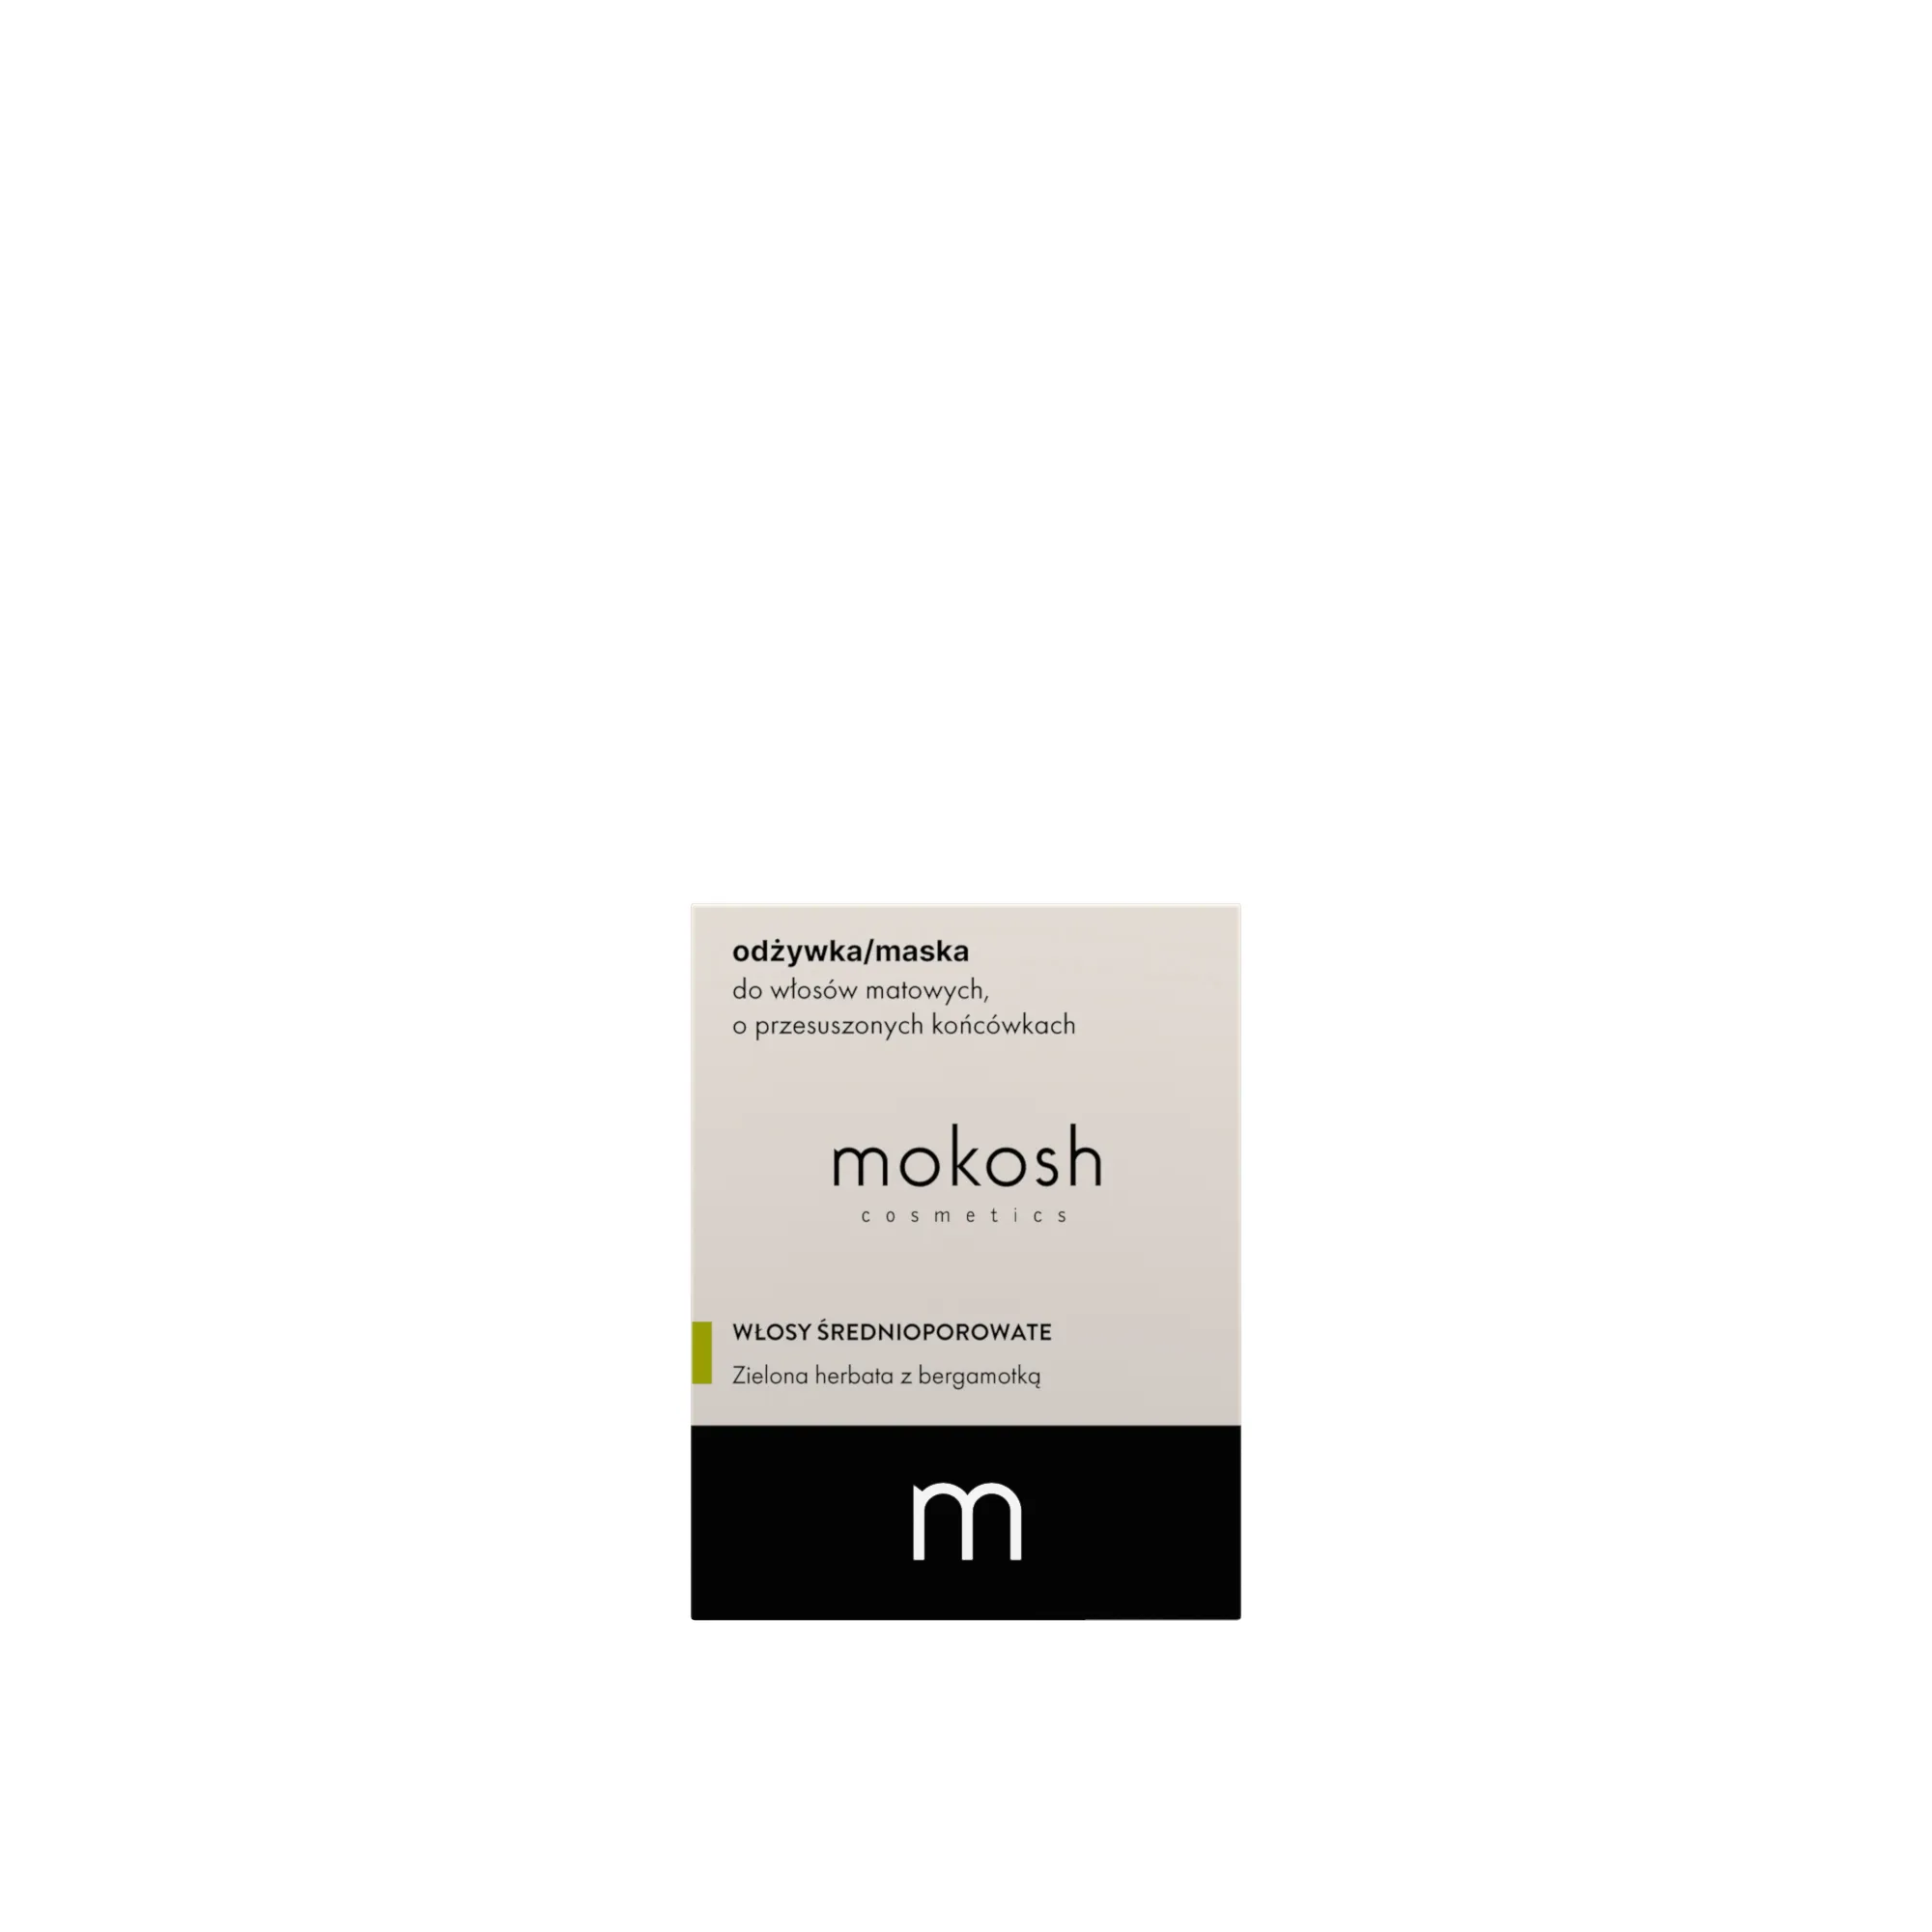 MOKOSH Odżywka/maska do włosów matowych, o przesuszonych końcówkach, 180 ml 